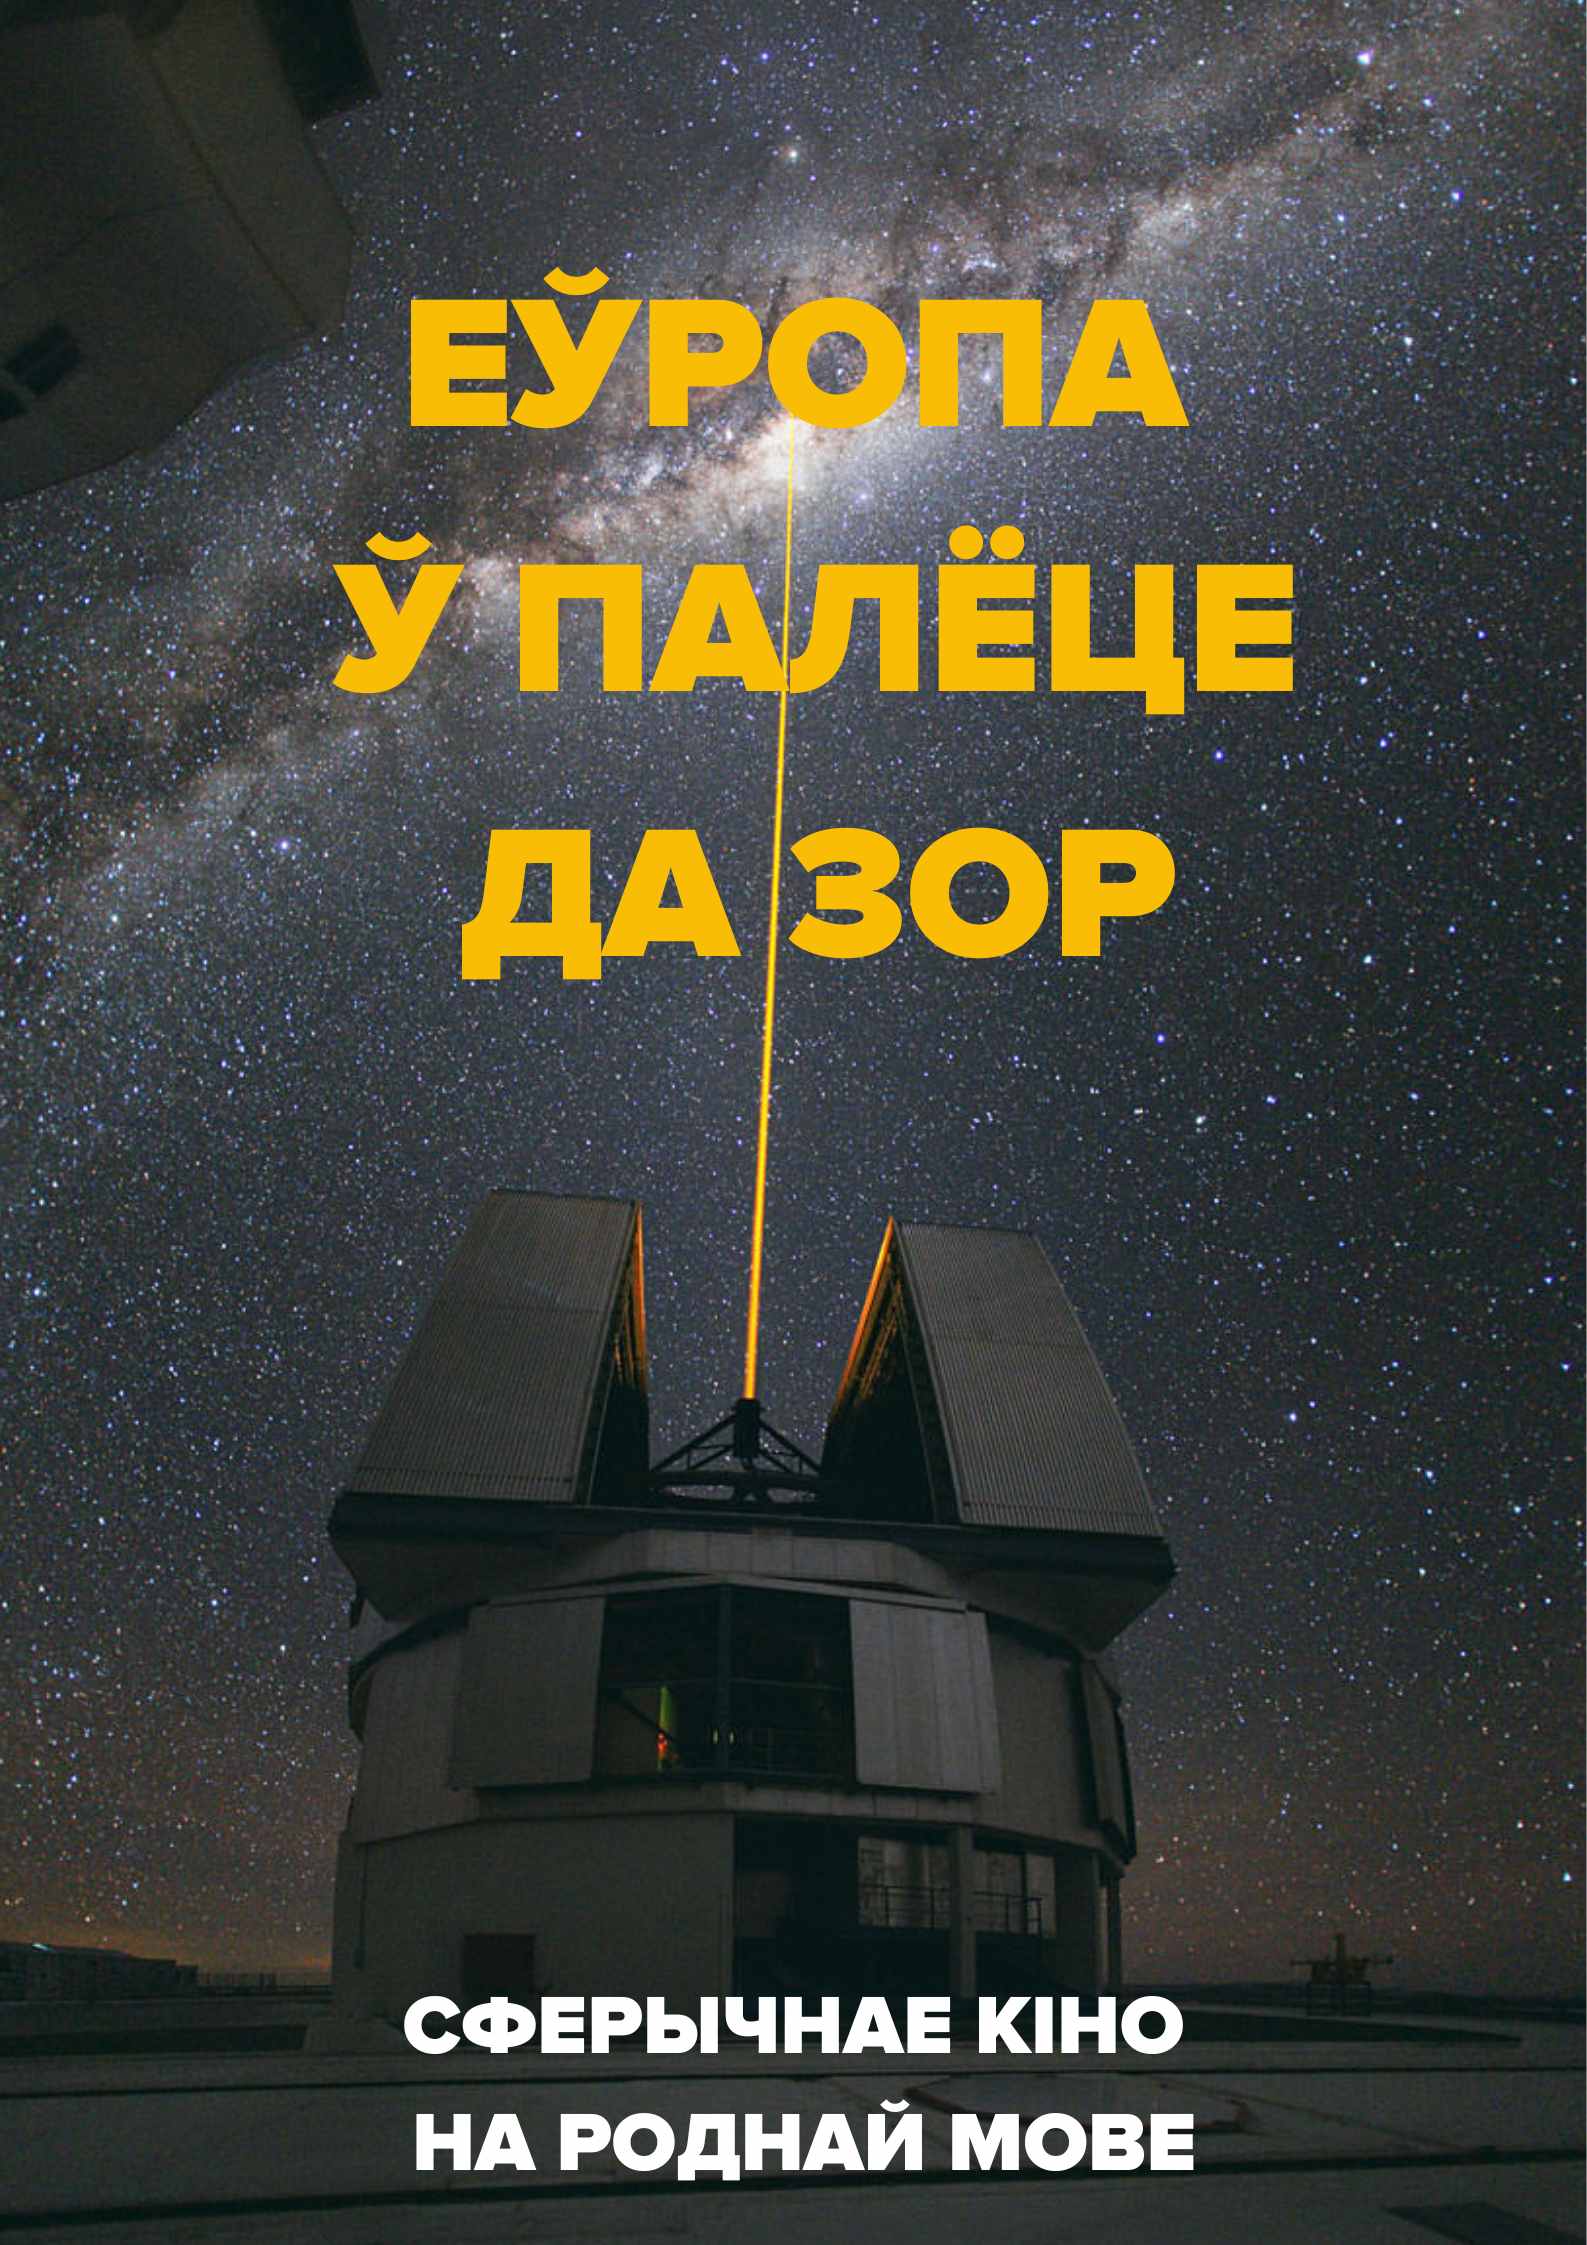 Фото - постер к Кино Еўропа ў палёце да зор на kudapoiti.by